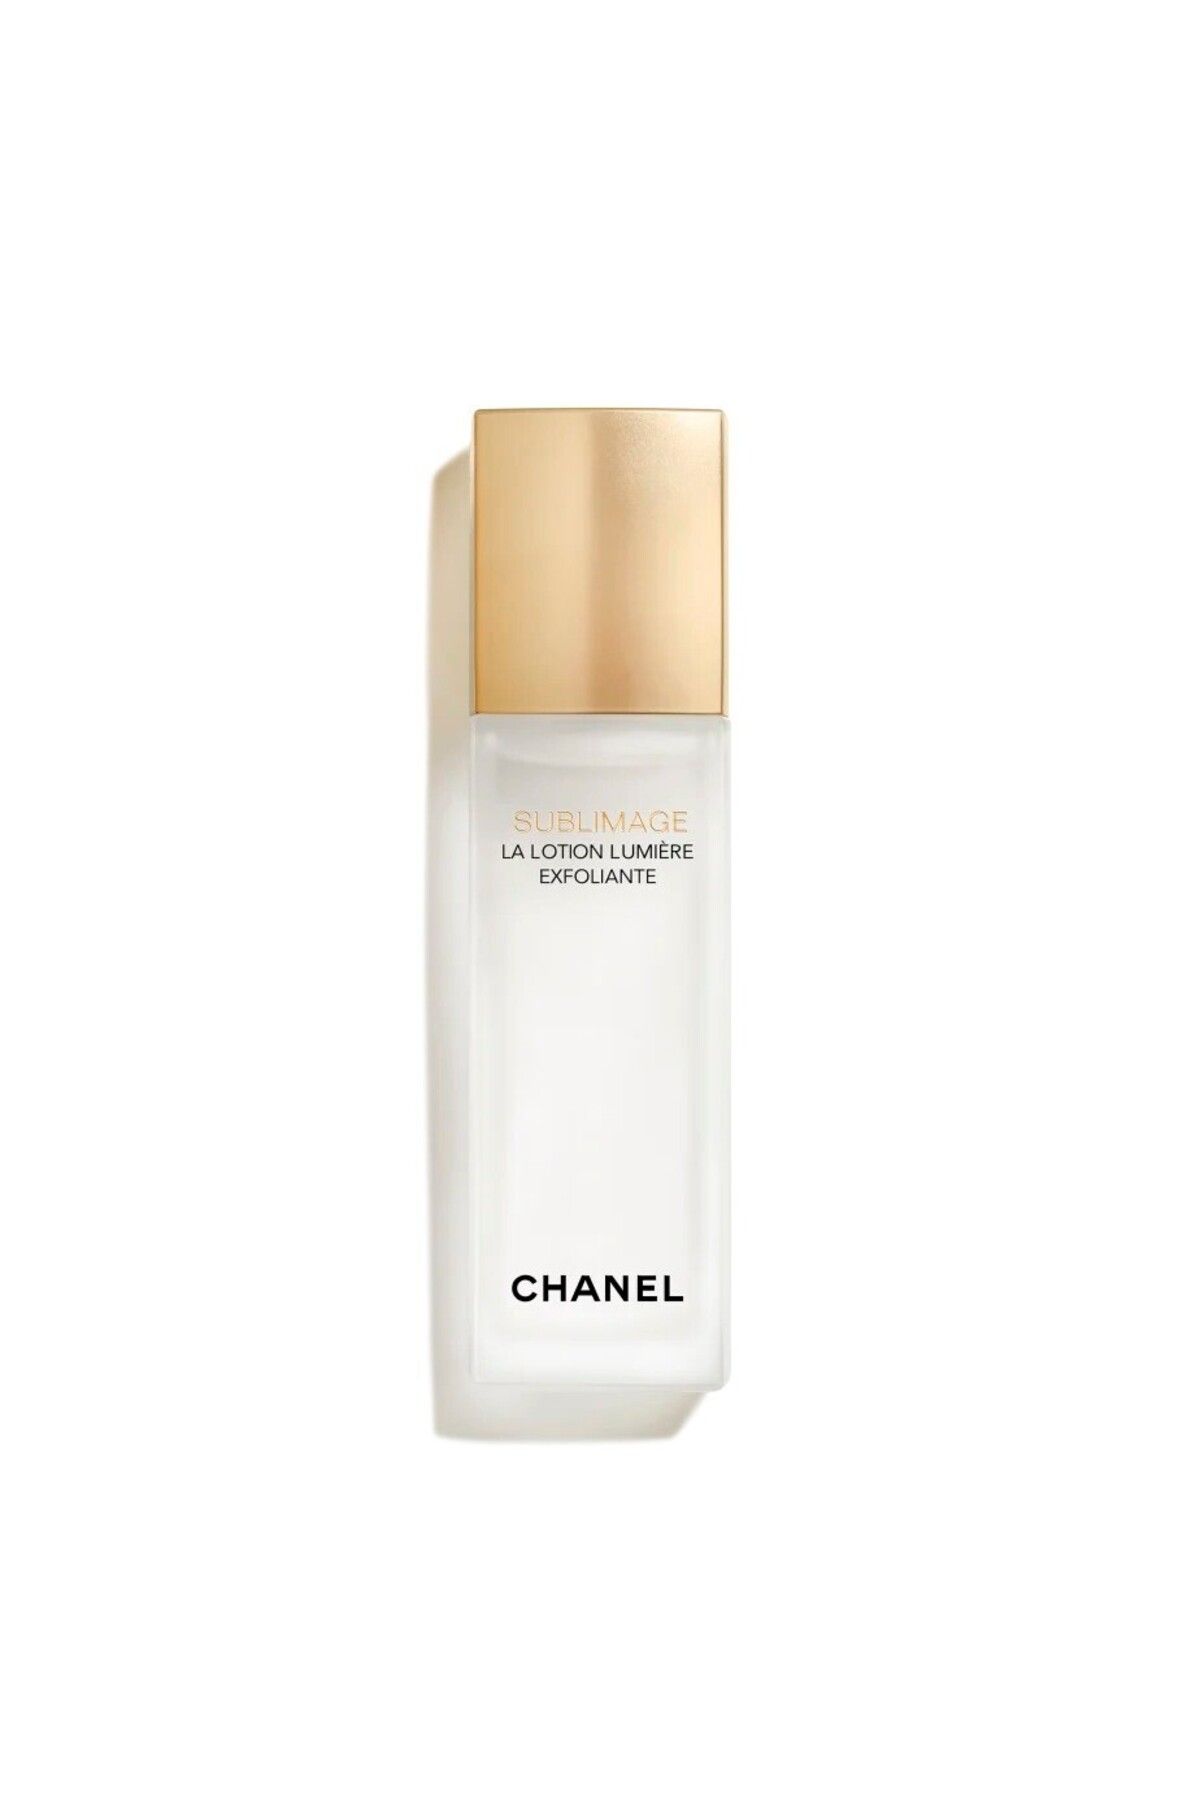 Chanel لوسیون روشن کننده و ترمیم کننده پوست منحصر به فرد SUBLIMAGE حاوی AHA/BHA لایه بردار ملایم 125میل